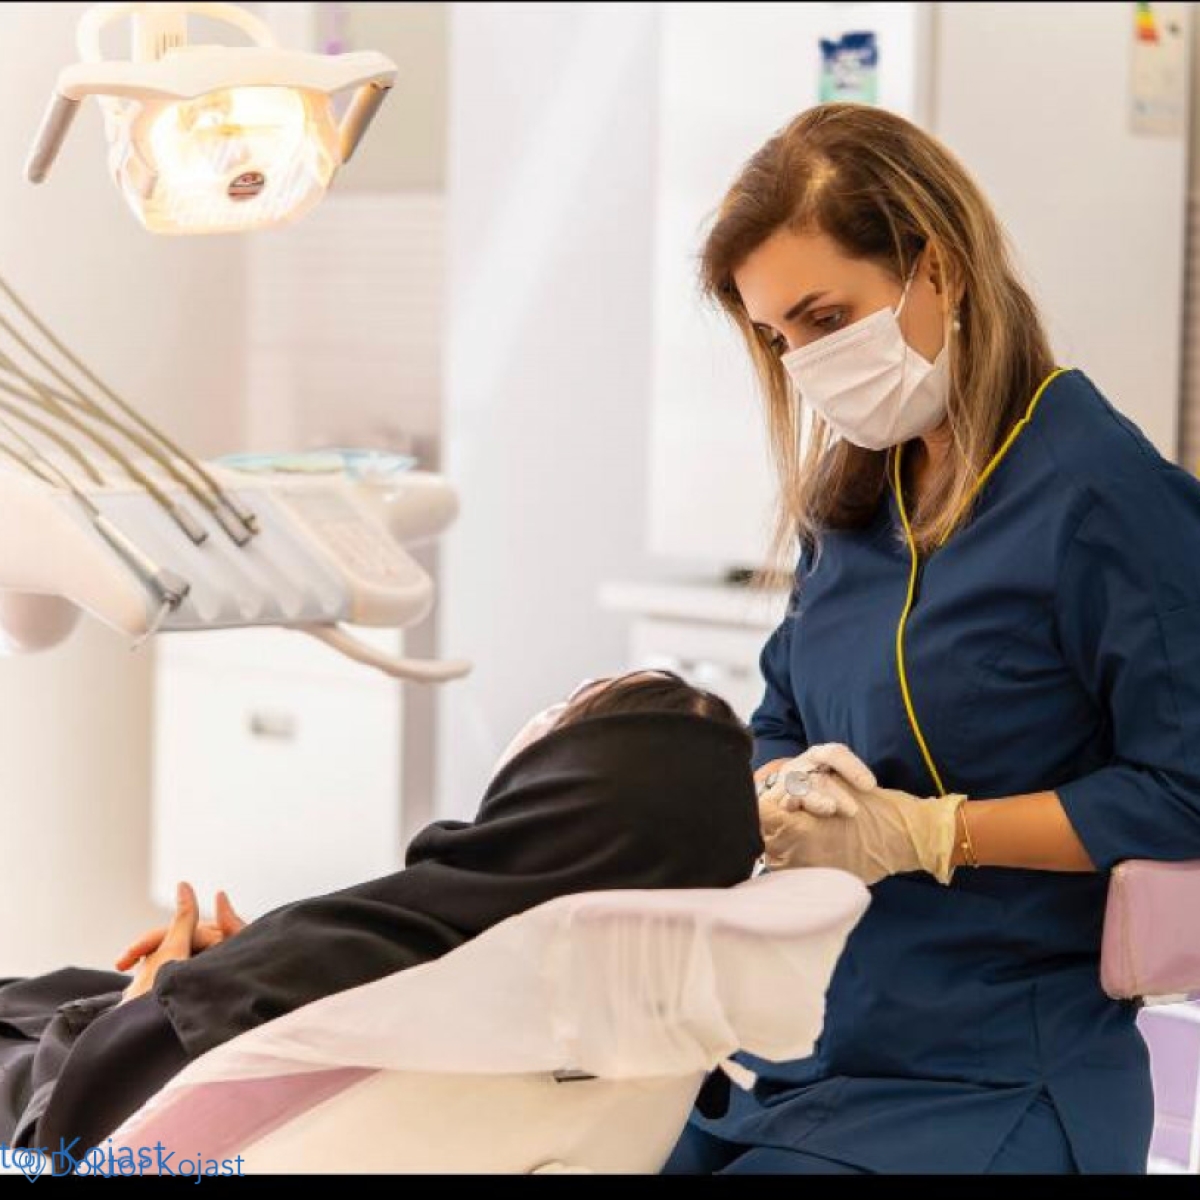 دندانپزشکی در محیطی کاملا آرام در تمام روزهای هفته بصورت شبانه روزی